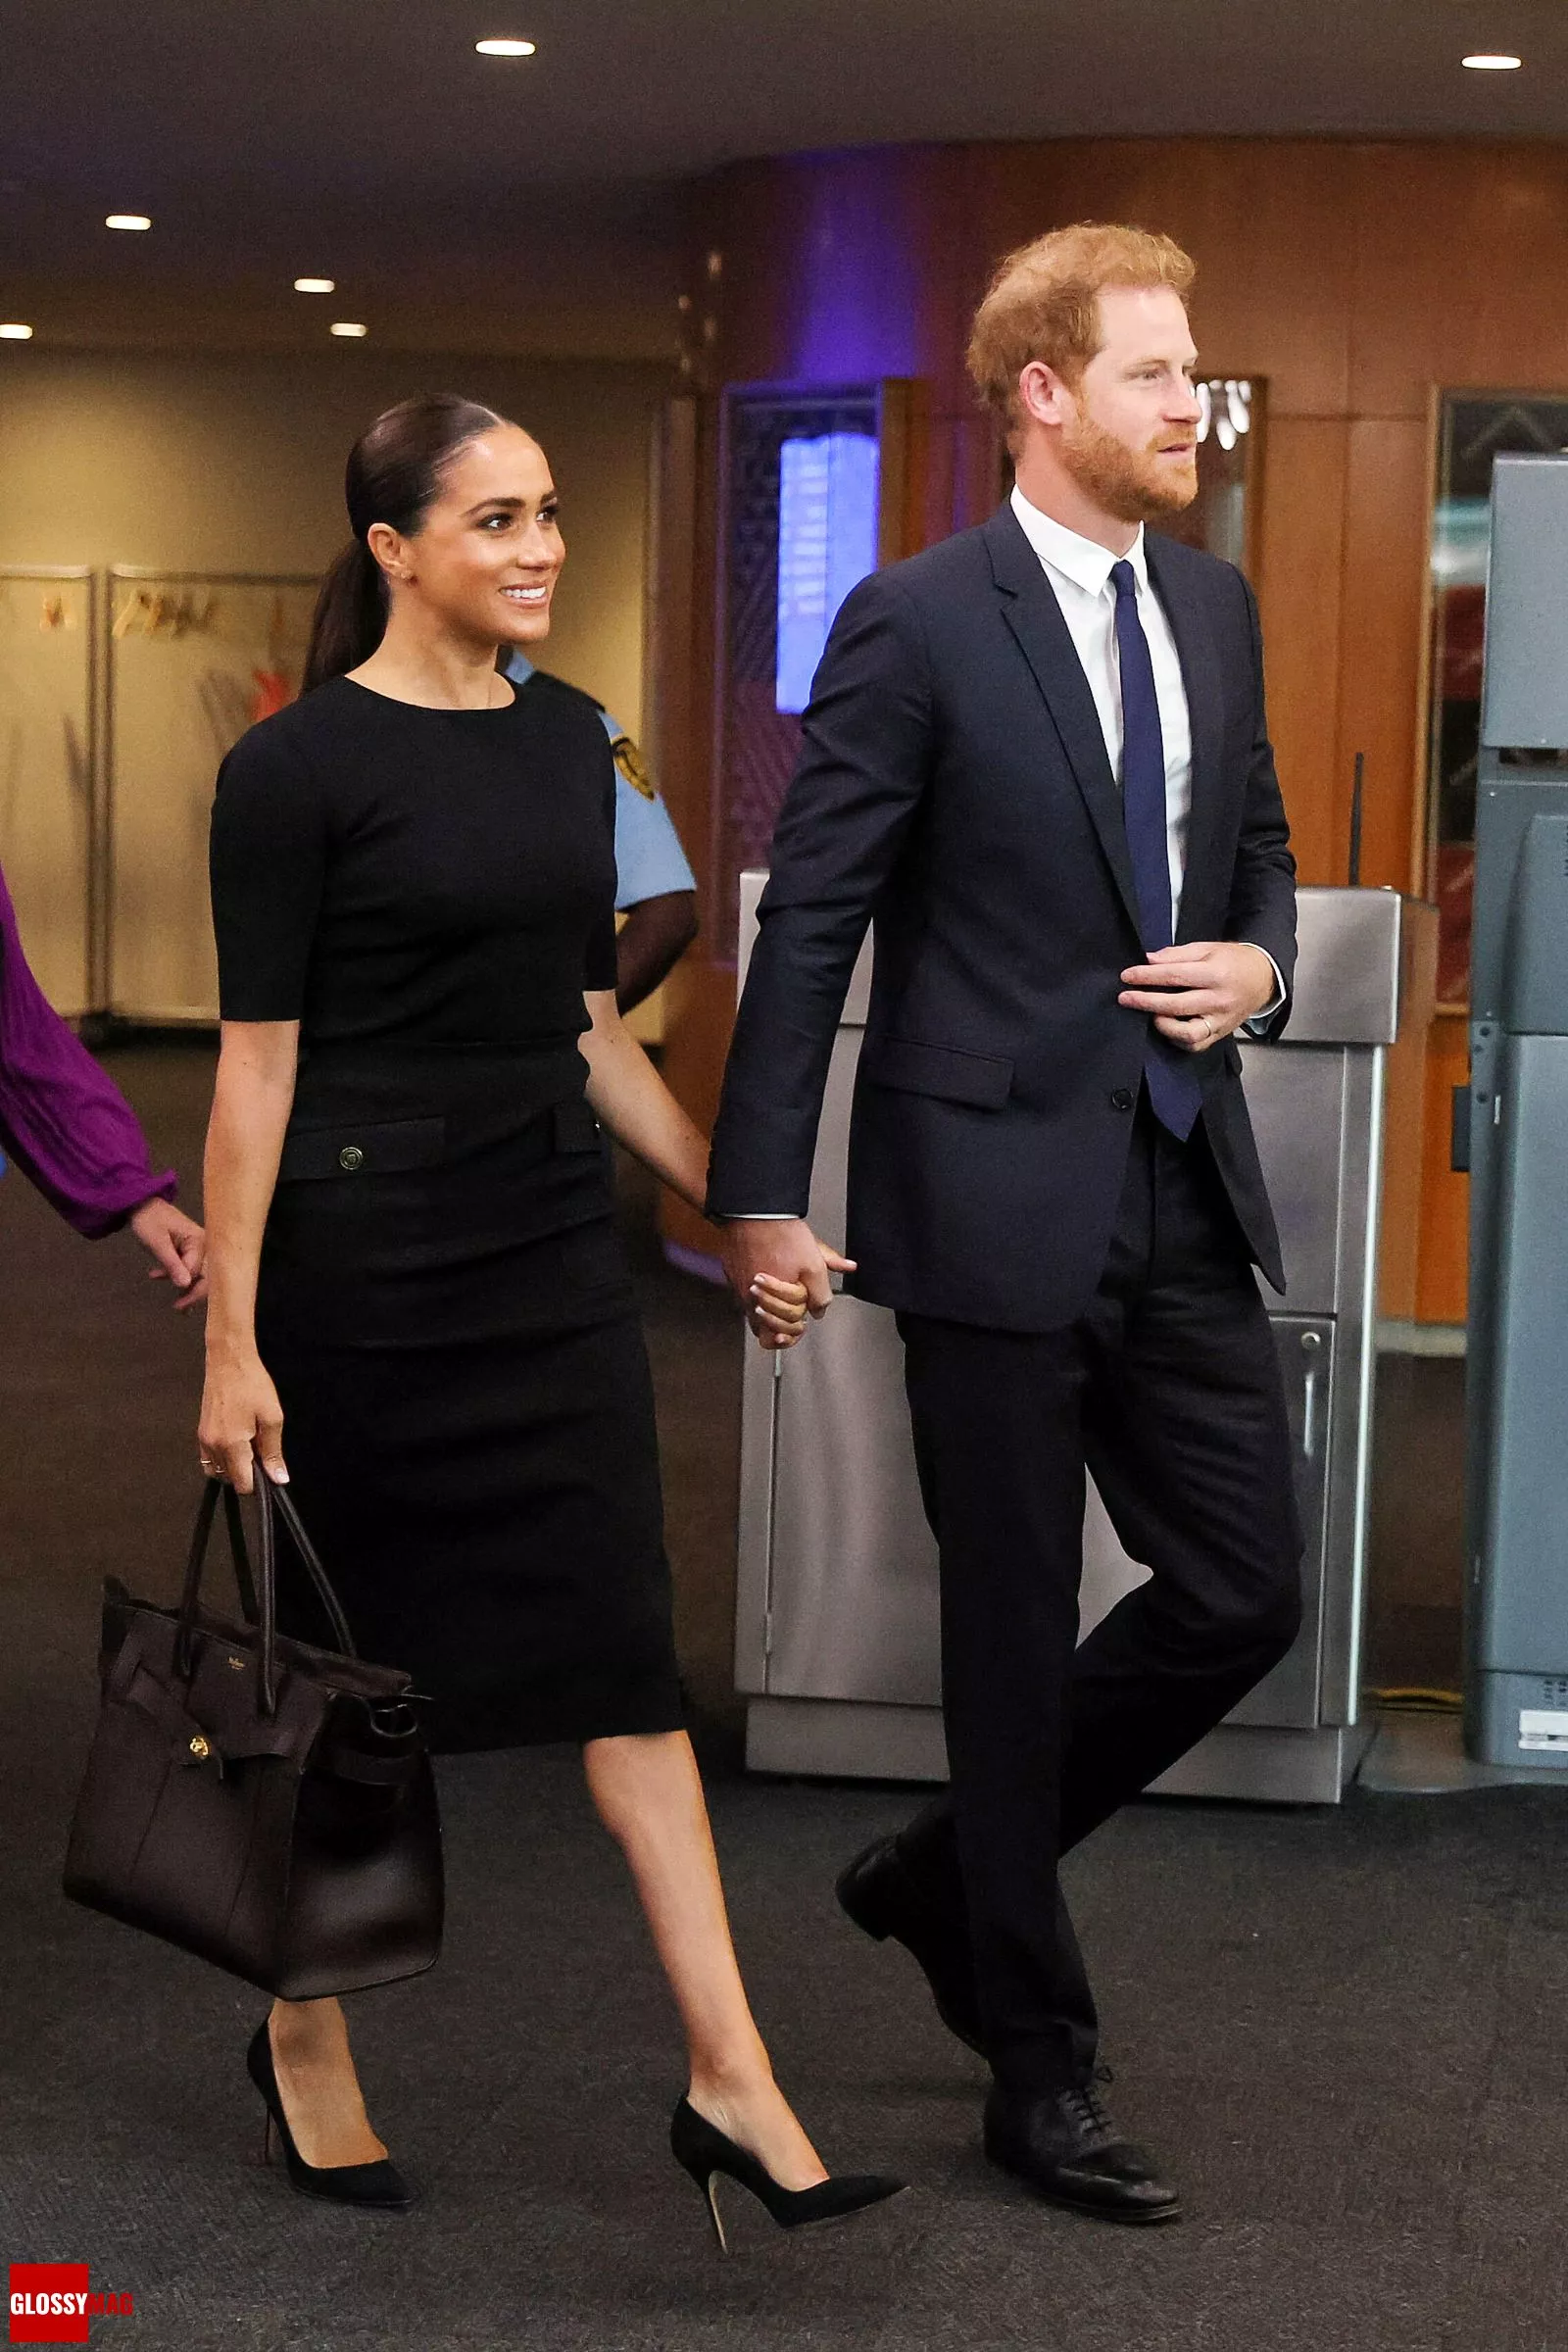 Принц Гарри и Меган Маркл прибыли на выступлении принца перед Генеральной ассамблеей ООН в Нью-Йорке, 18 июля 2022 г., фото 2